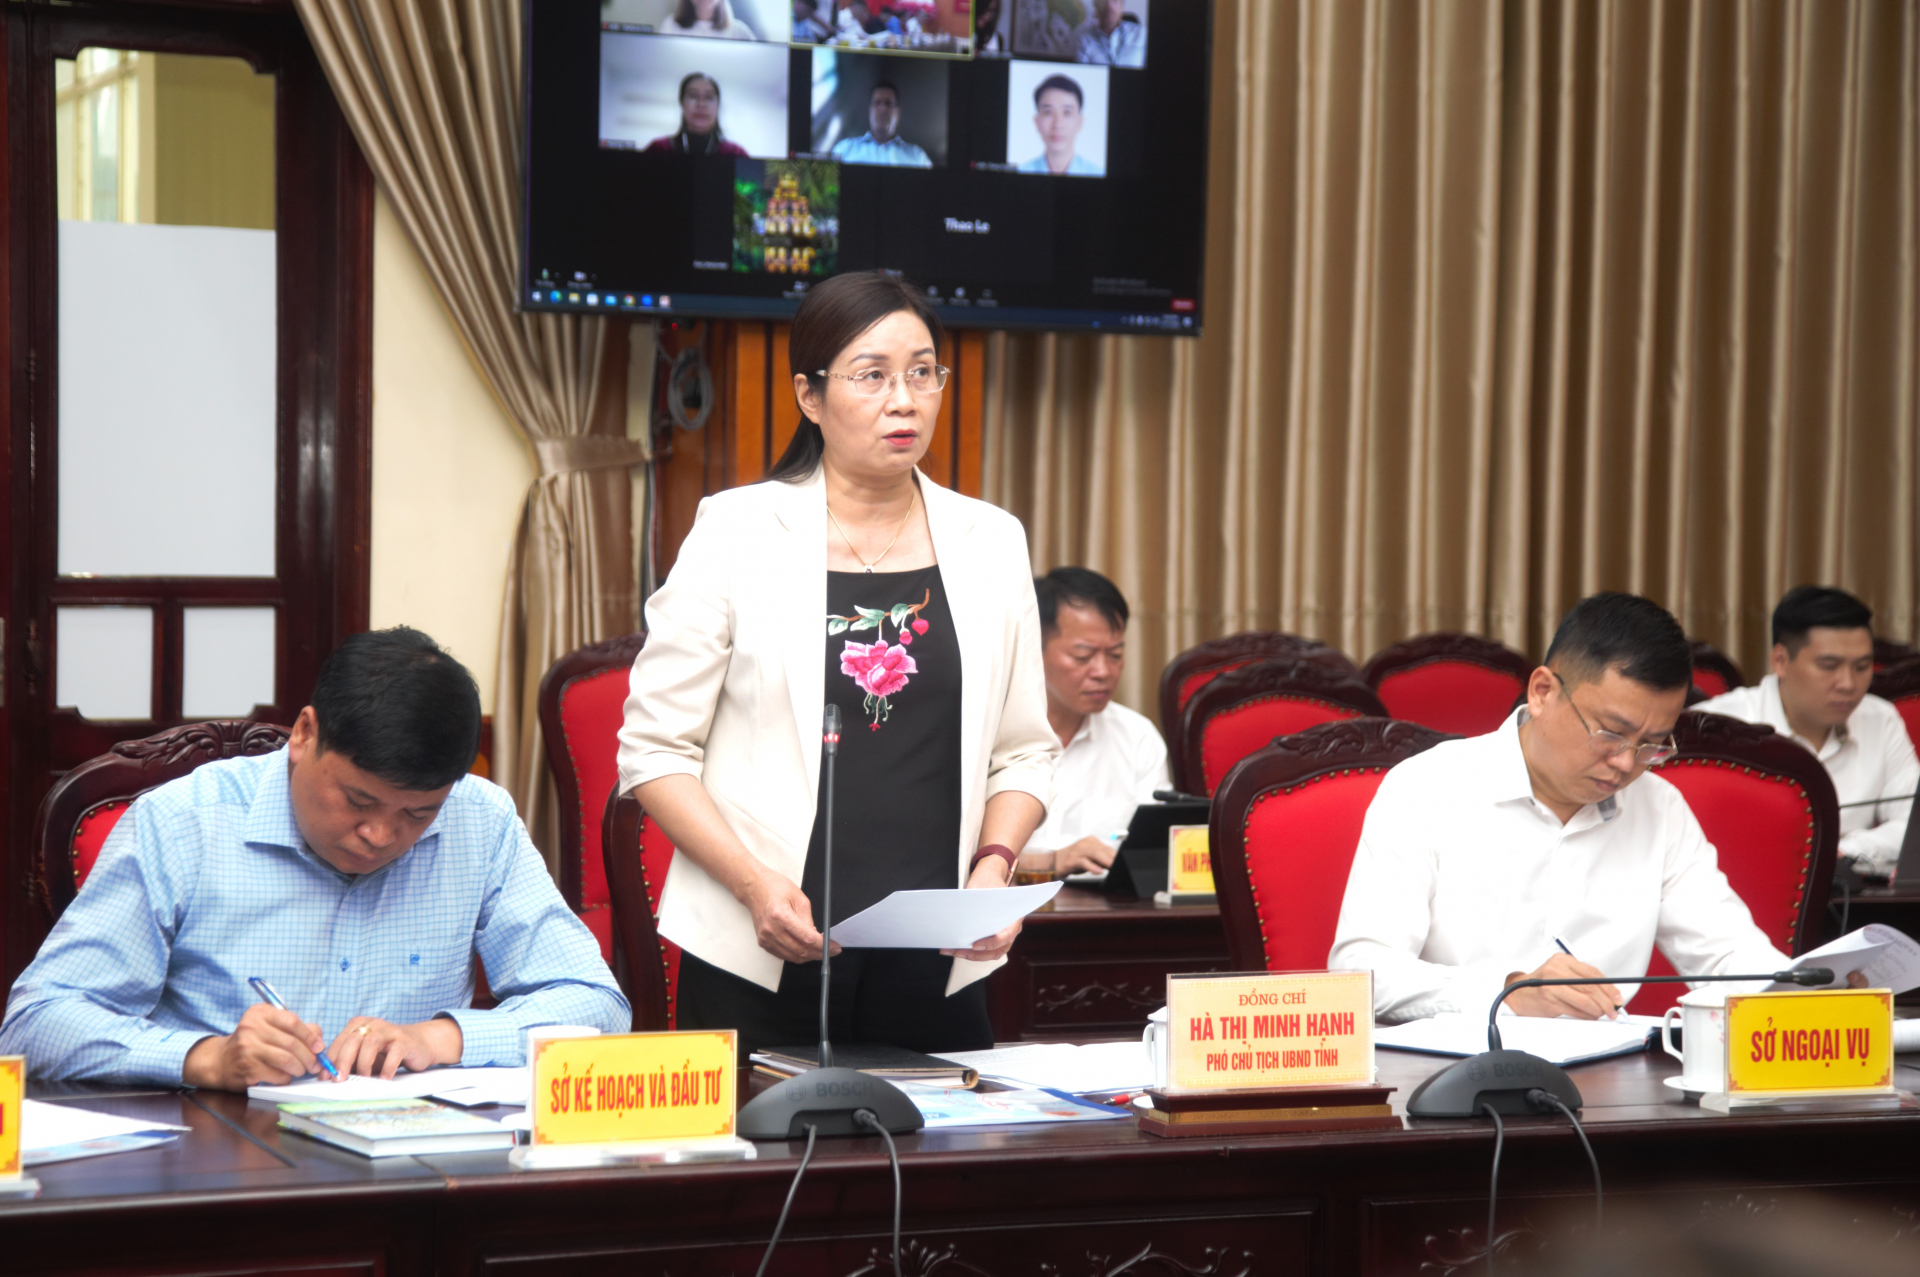 Phó Chủ tịch UBND tỉnh Hà Thị Minh Hạnh phát biểu tại buổi làm việc.